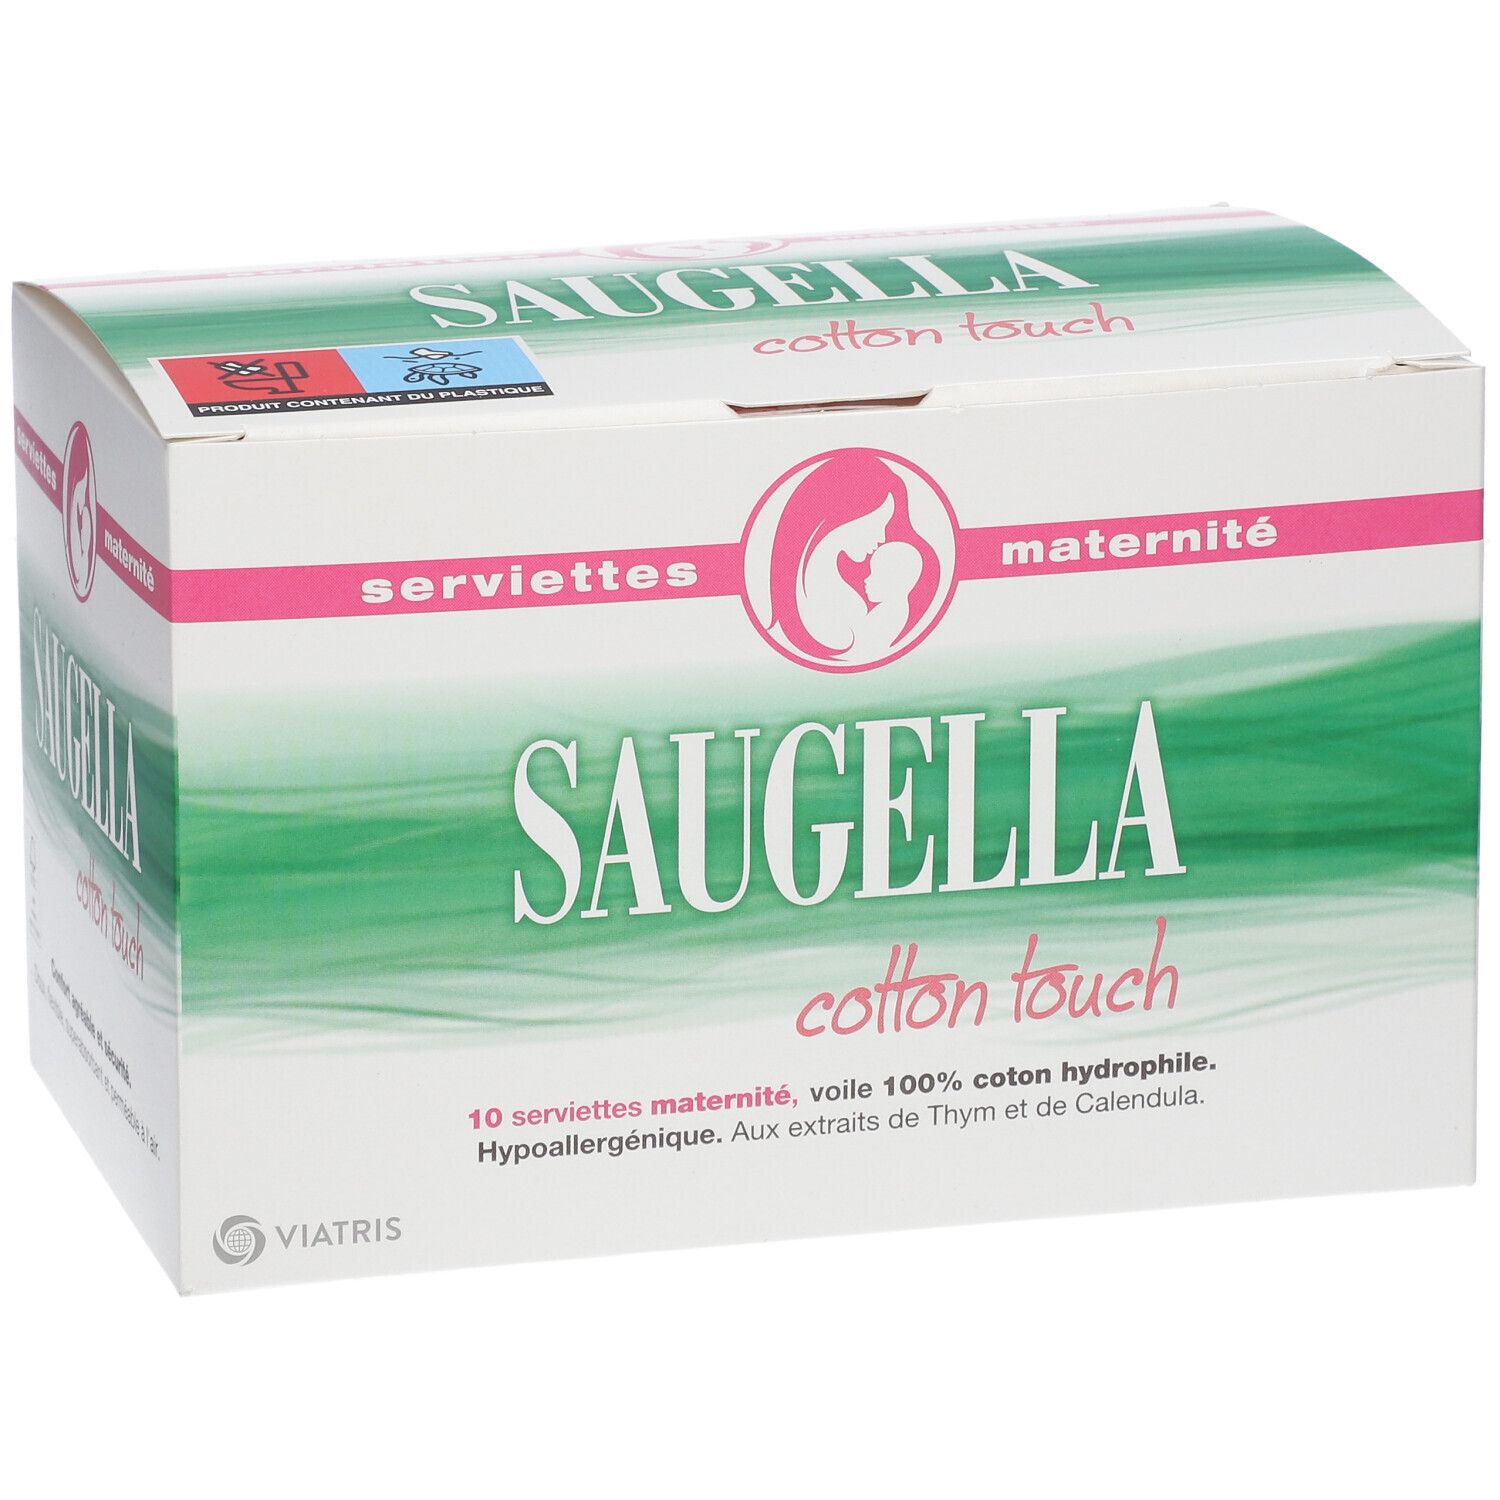 Saugella Cotton Touch Serviettes maternité